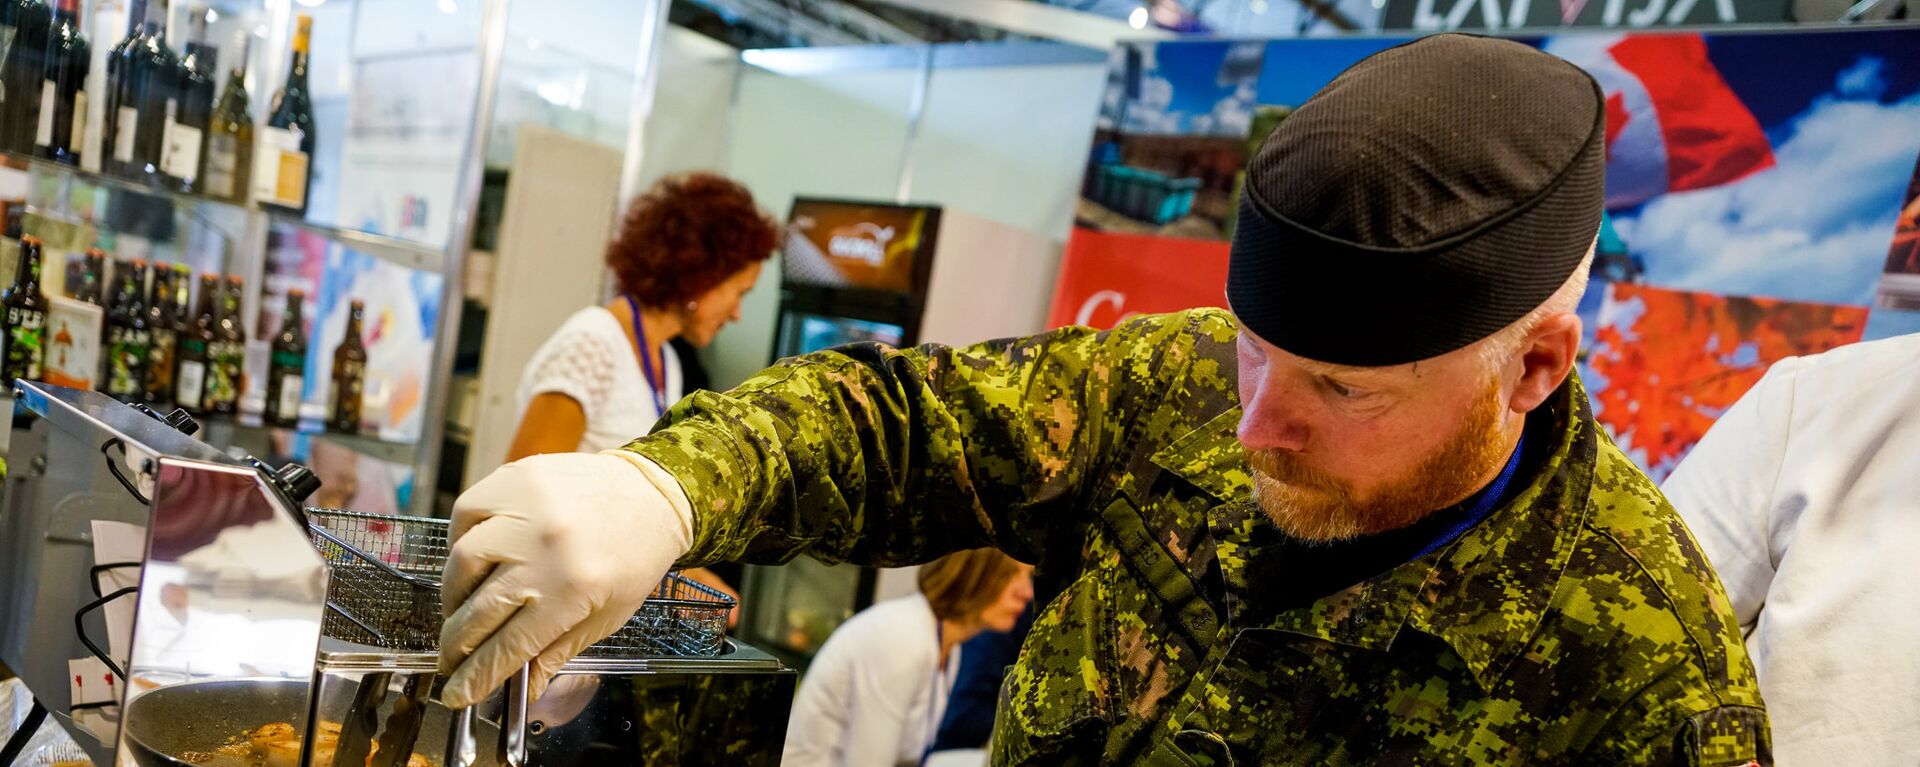 Канадский военный из сводного батальона НАТО в Латвии готовит гребешки - Sputnik Латвия, 1920, 02.08.2019